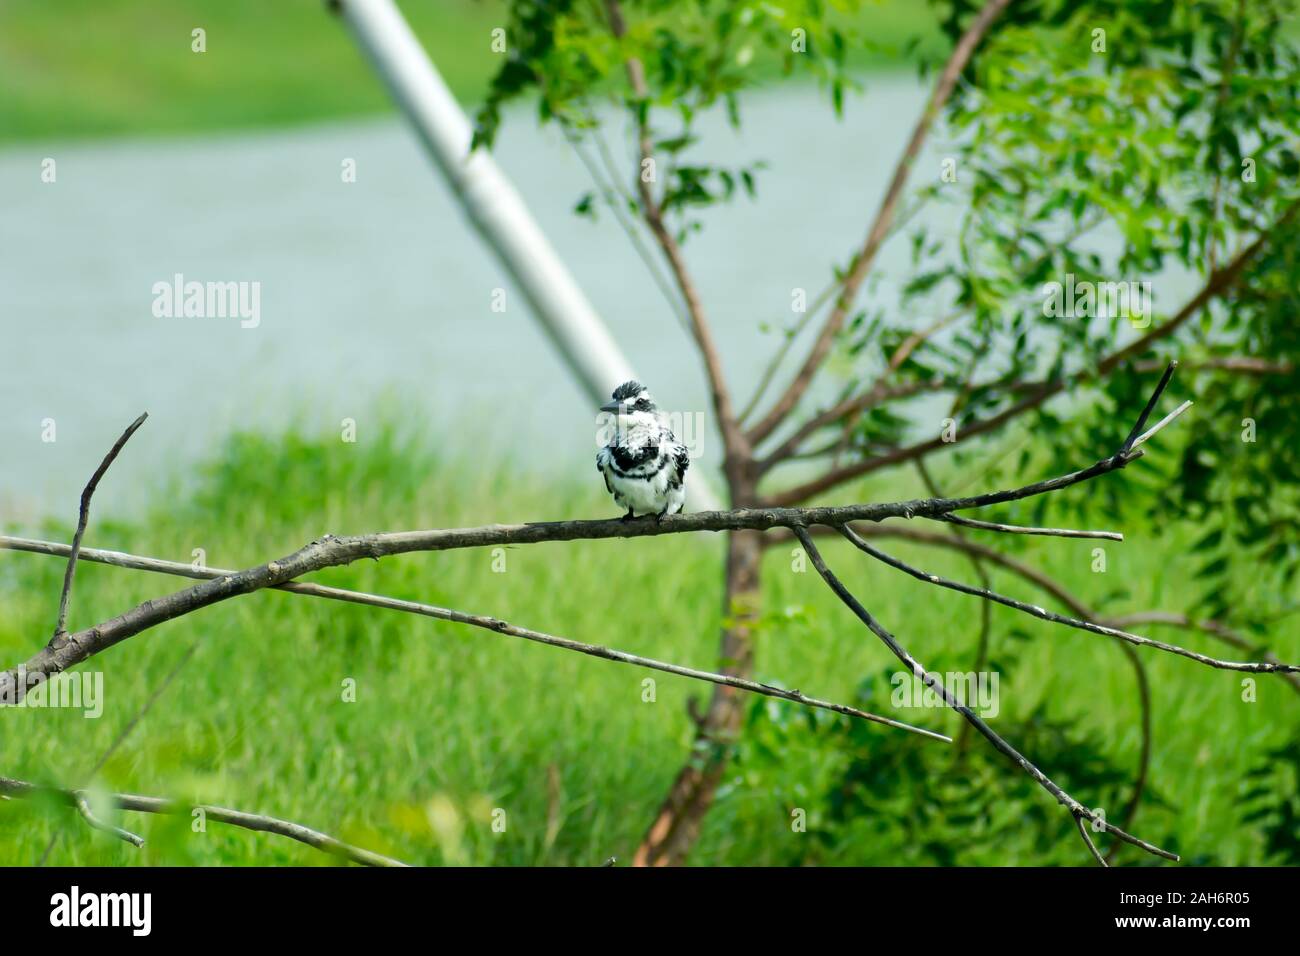 Pied kingfisher Wasser Vogel (Ceryle rudis) mit Weiß schwarzes Gefieder Crest und großen Schnabel auf Ast im Küstenbereich hocken Schweben für c entdeckt Stockfoto